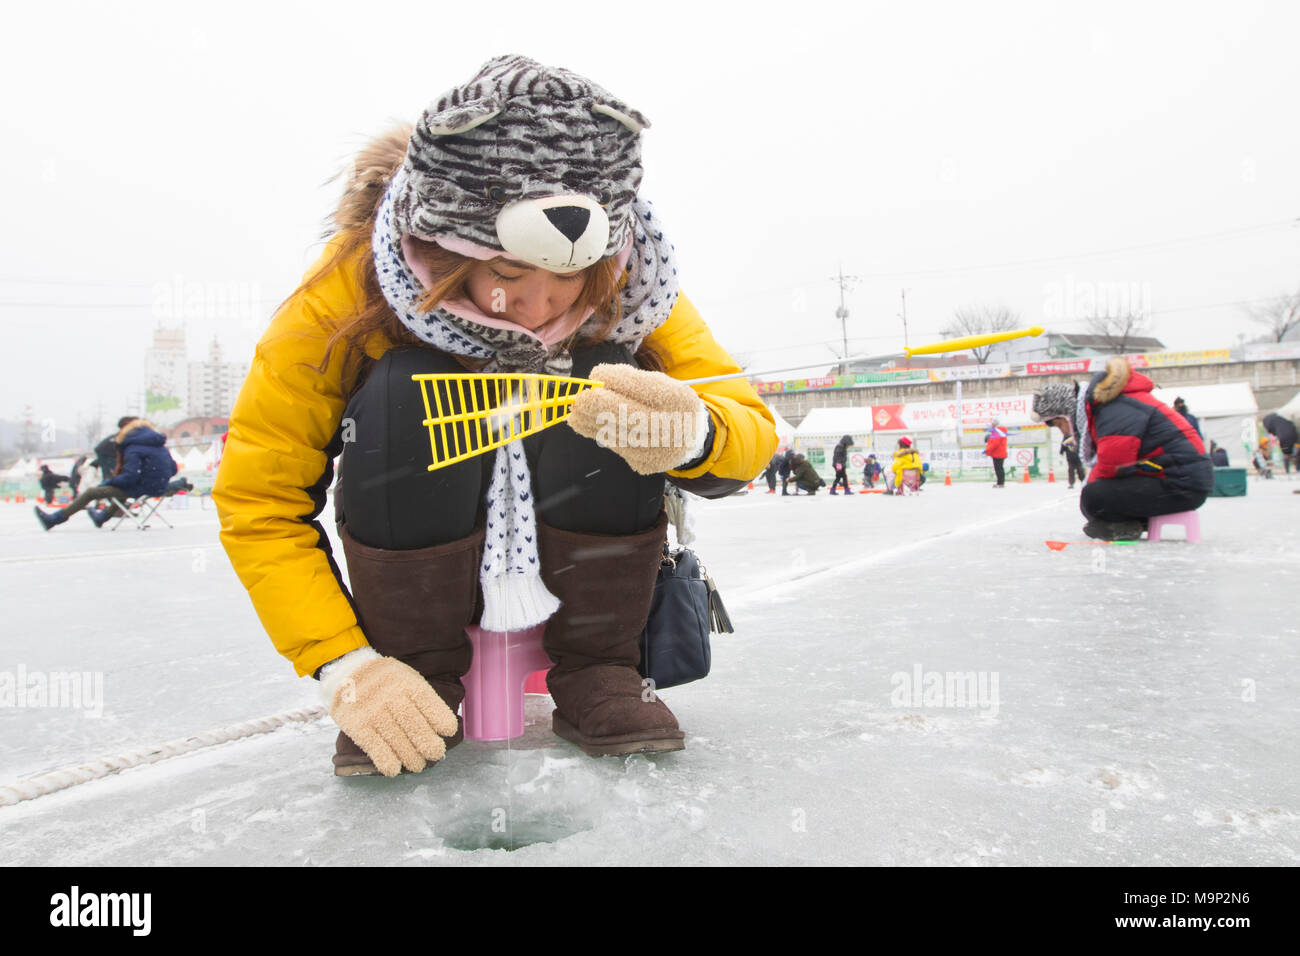 Ein warm gekleidete Frau versucht, einen Fisch an einem zugefrorenen Fluss zu fangen. Die Hwacheon Sancheoneo Ice Festival ist eine Tradition für die Menschen in Korea. Jedes Jahr im Januar Menschenmassen versammeln sich auf dem zugefrorenen Fluss der Kälte und dem Schnee des Winters zu feiern. Hauptattraktion ist Eisfischen. Jung und Alt warten geduldig auf ein kleines Loch im Eis für eine Forelle zu beißen. In zelten Sie können den Fisch vom Grill, nach dem sie gegessen werden. Unter anderem sind Rodeln und Eislaufen. Die in der Nähe Pyeongchang Region wird Gastgeber der Olympischen Winterspiele im Februar 2018. Stockfoto